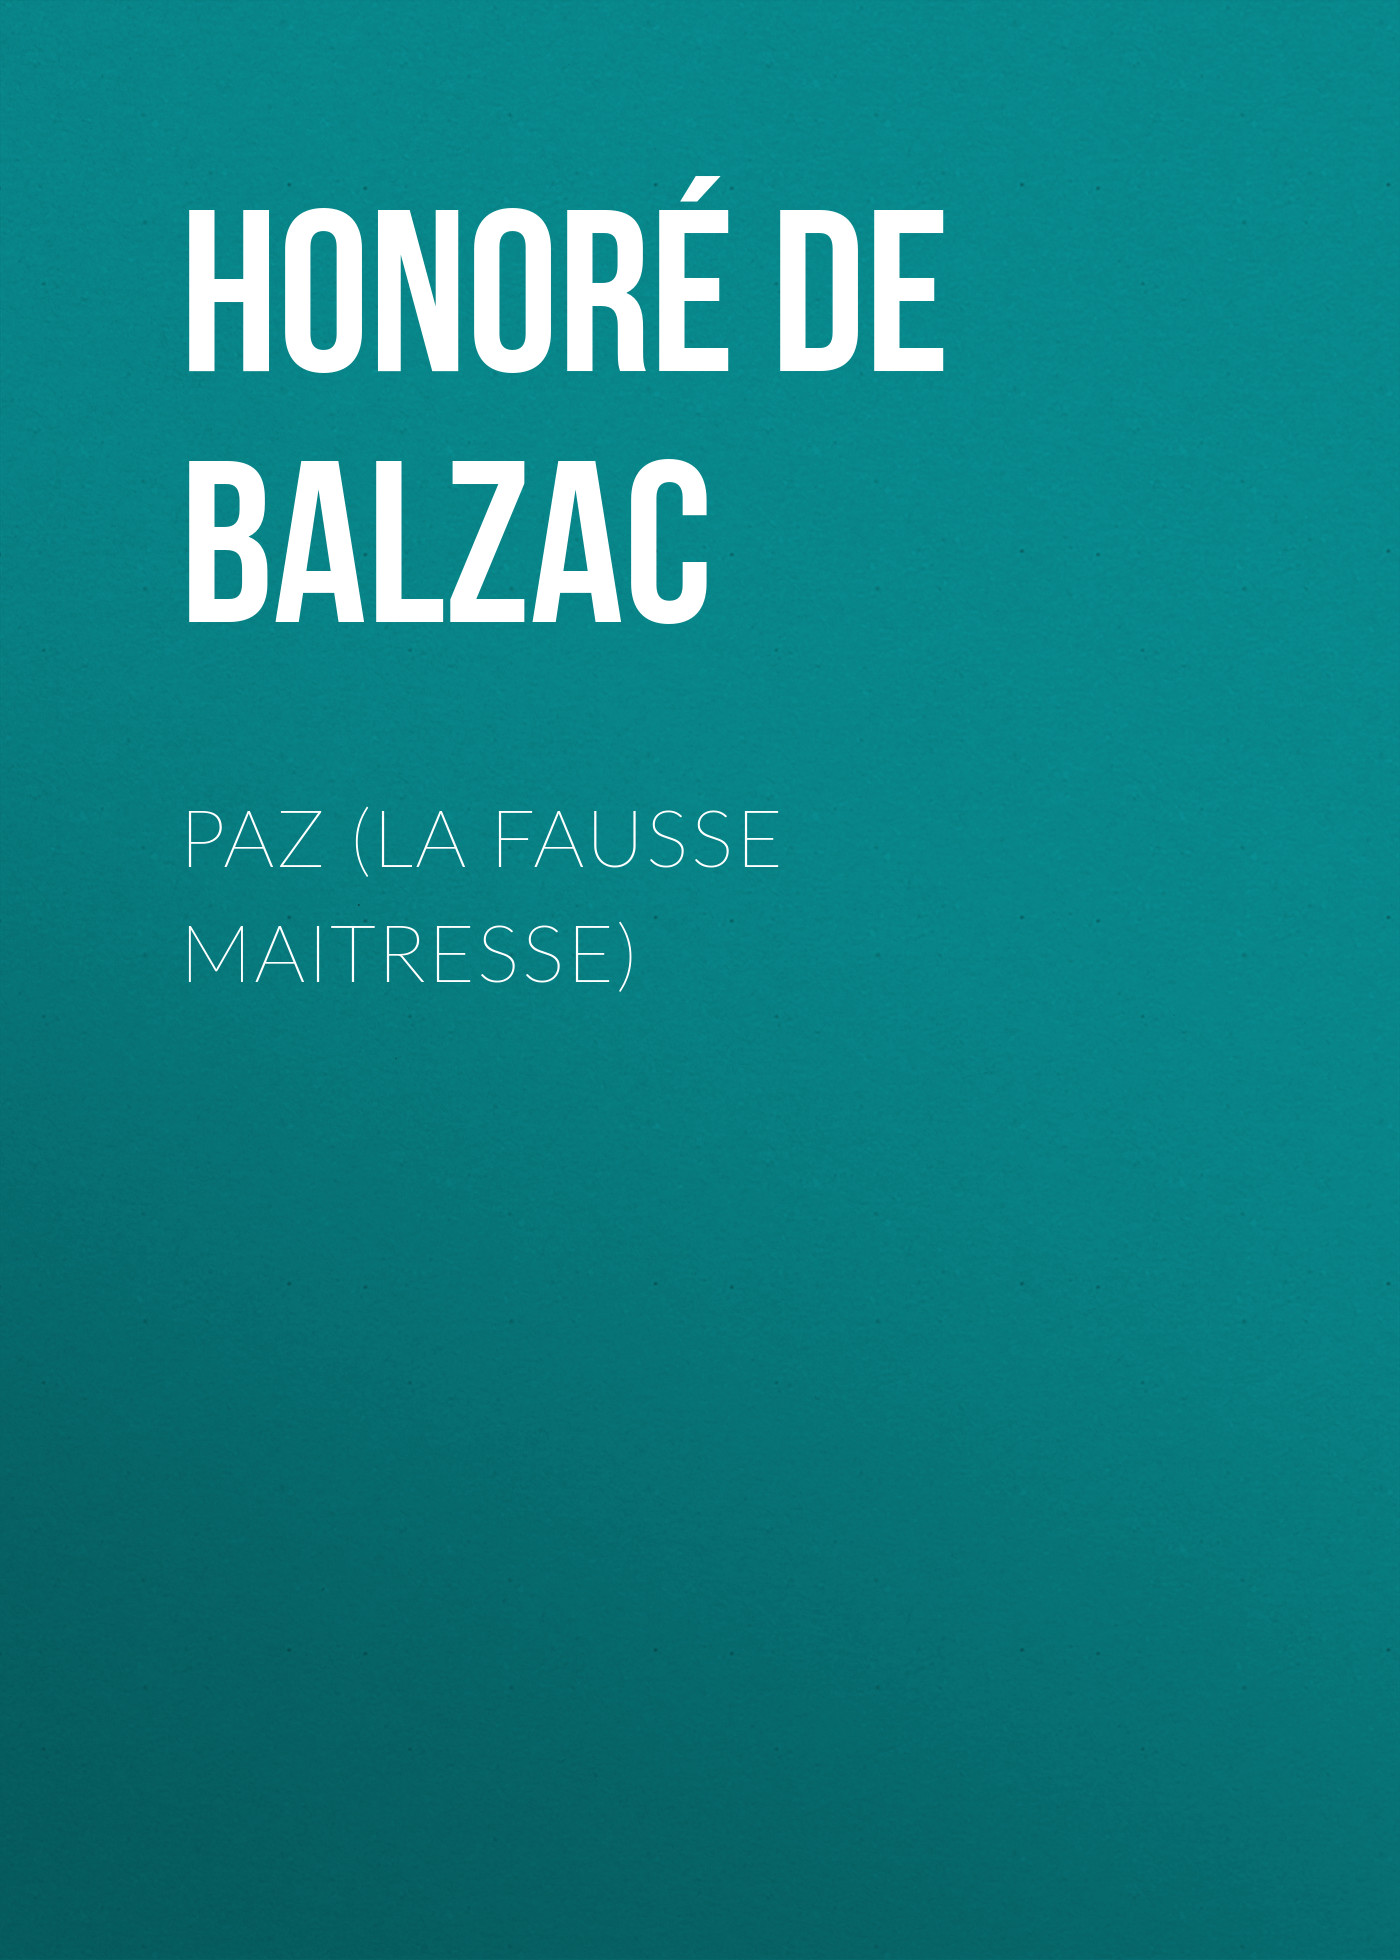 Книга Paz (La Fausse Maitresse) из серии , созданная Honoré Balzac, может относится к жанру Литература 19 века, Зарубежная старинная литература, Зарубежная классика. Стоимость электронной книги Paz (La Fausse Maitresse) с идентификатором 25021267 составляет 0 руб.